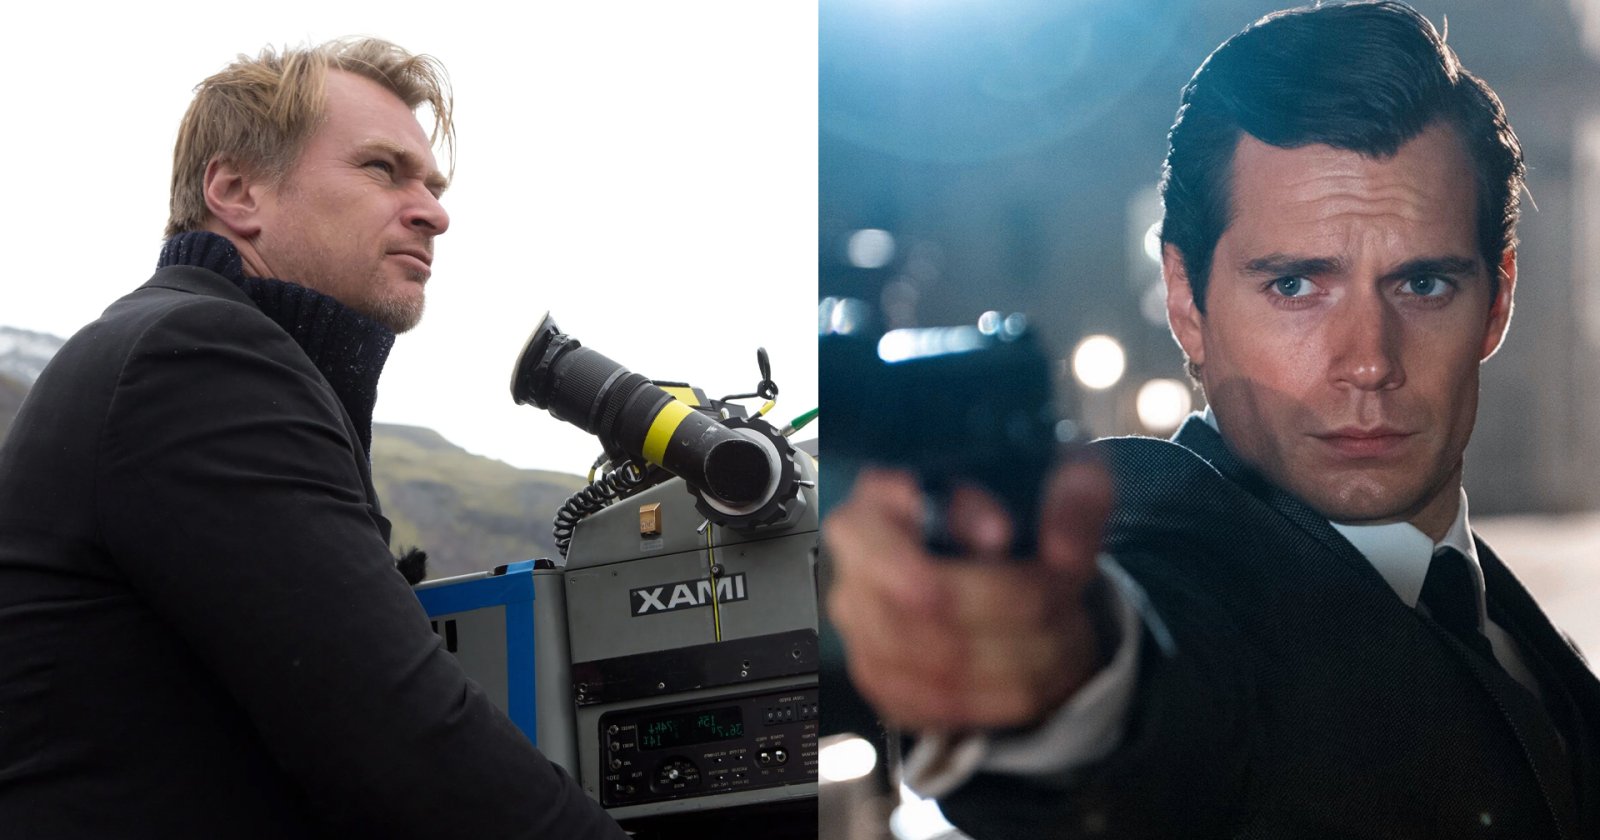 ลือ! Christopher Nolan เตรียมกำกับ James Bond พร้อมดึง Henry Cavill เป็น 007 คนใหม่